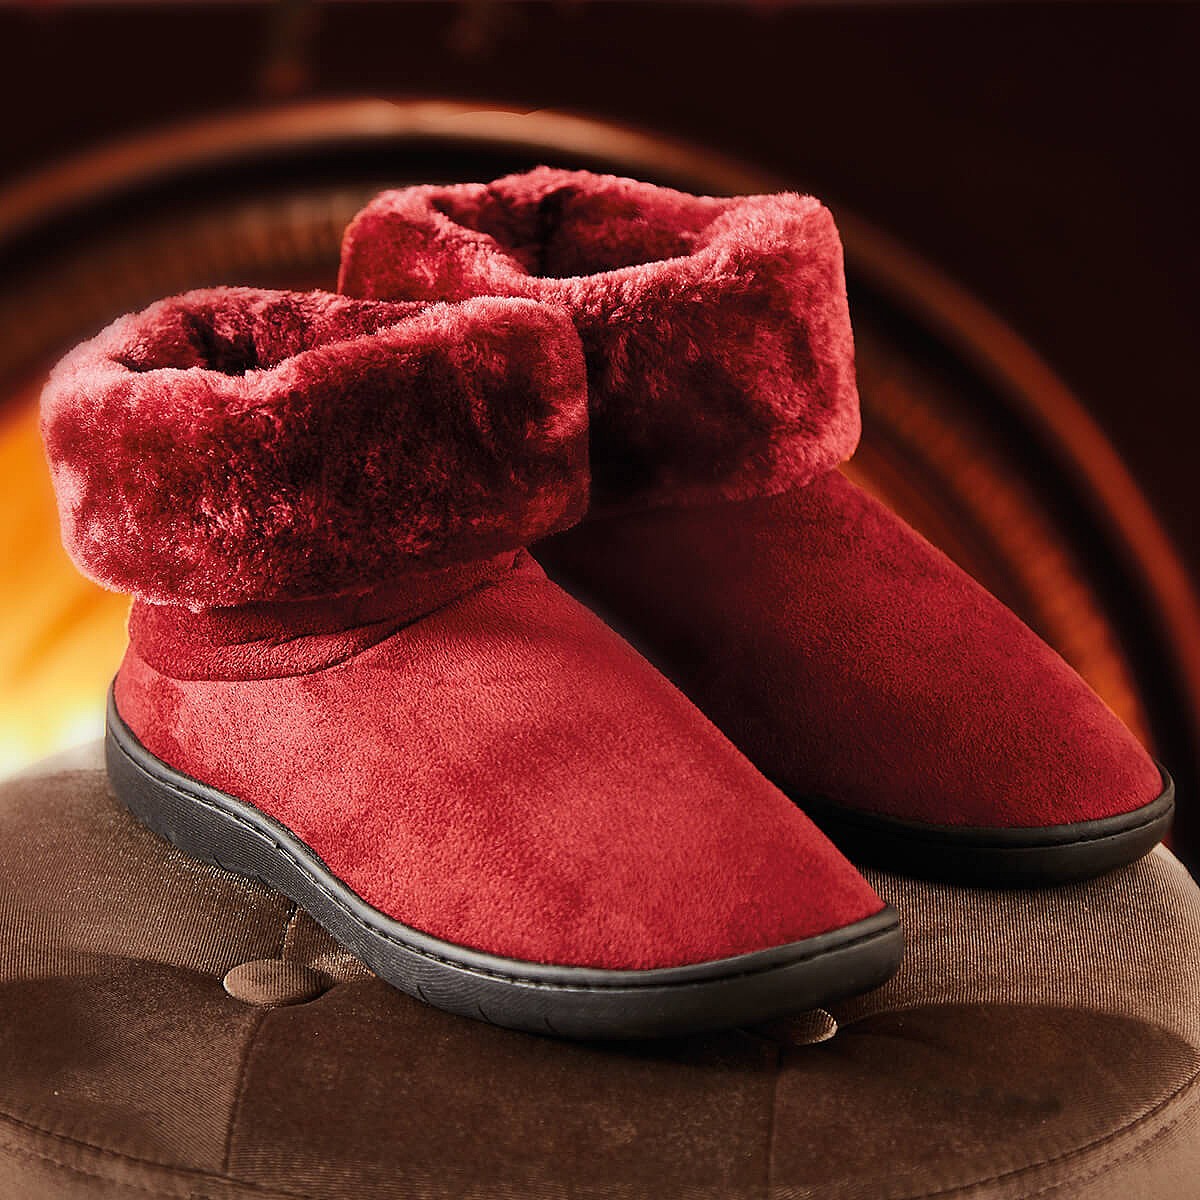 burgundy slippers